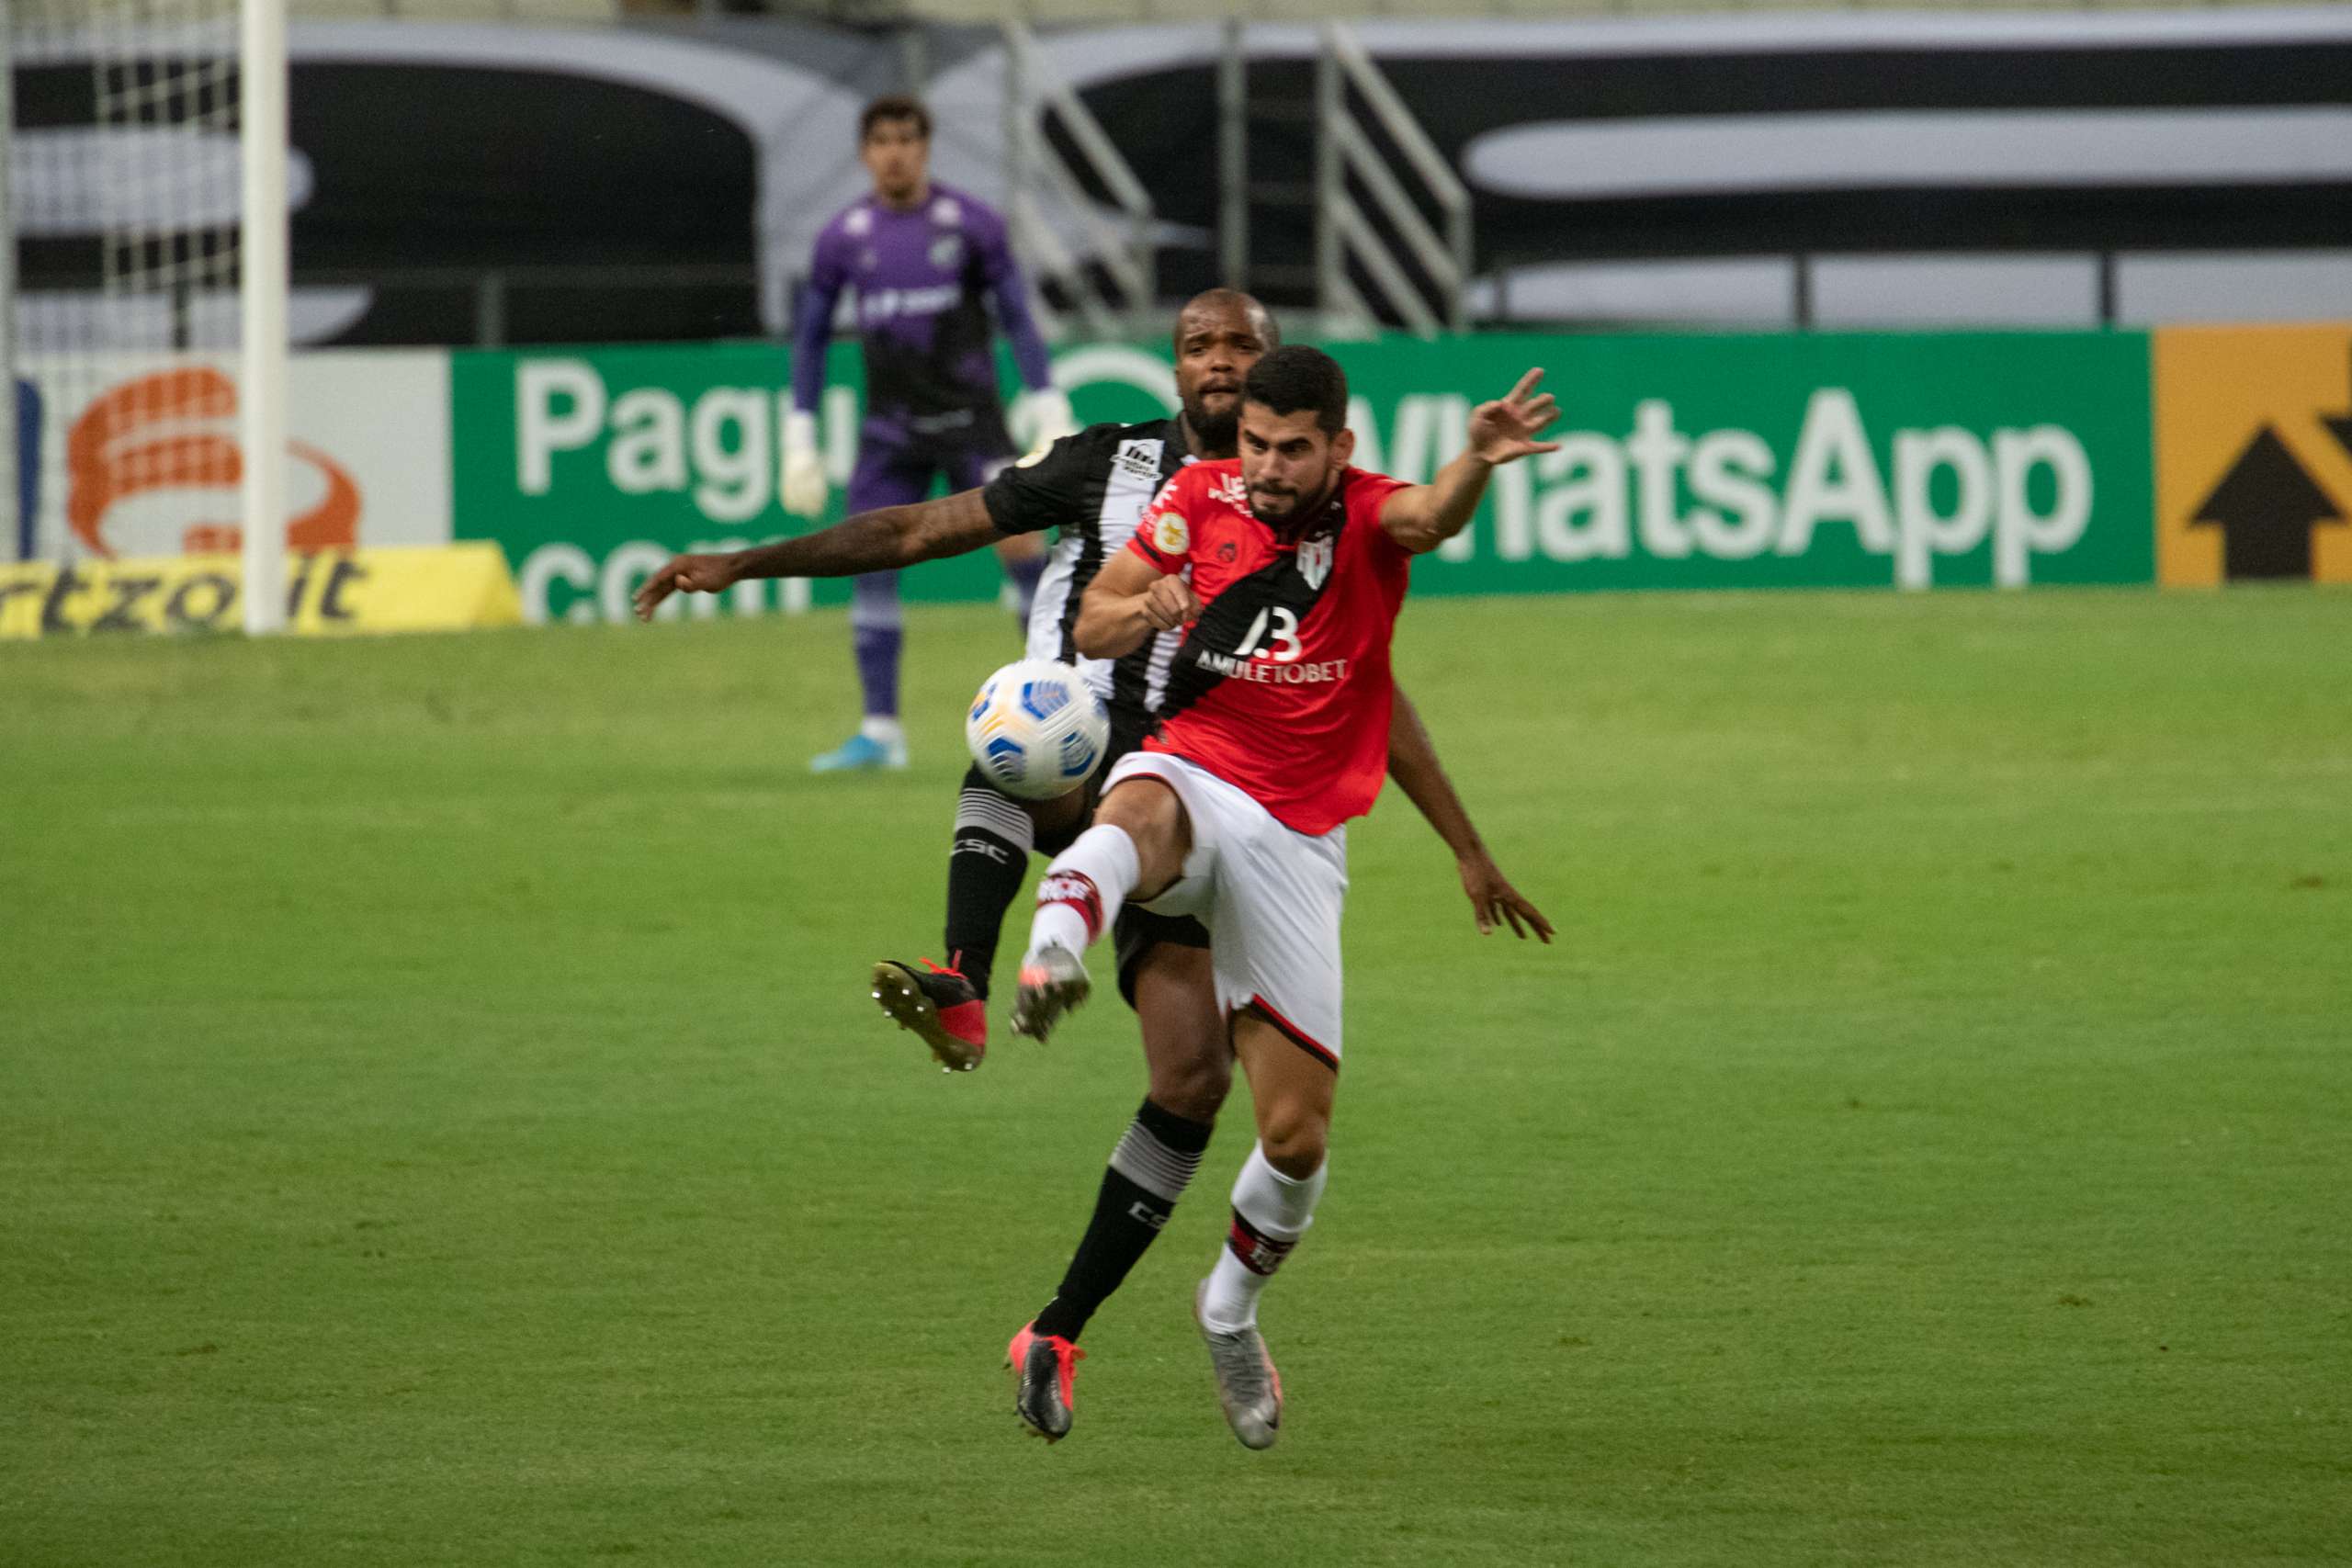 Ceará 0 x 0 Atlético-GO – Empate sem graça e que não ajuda ninguém no Brasileirão